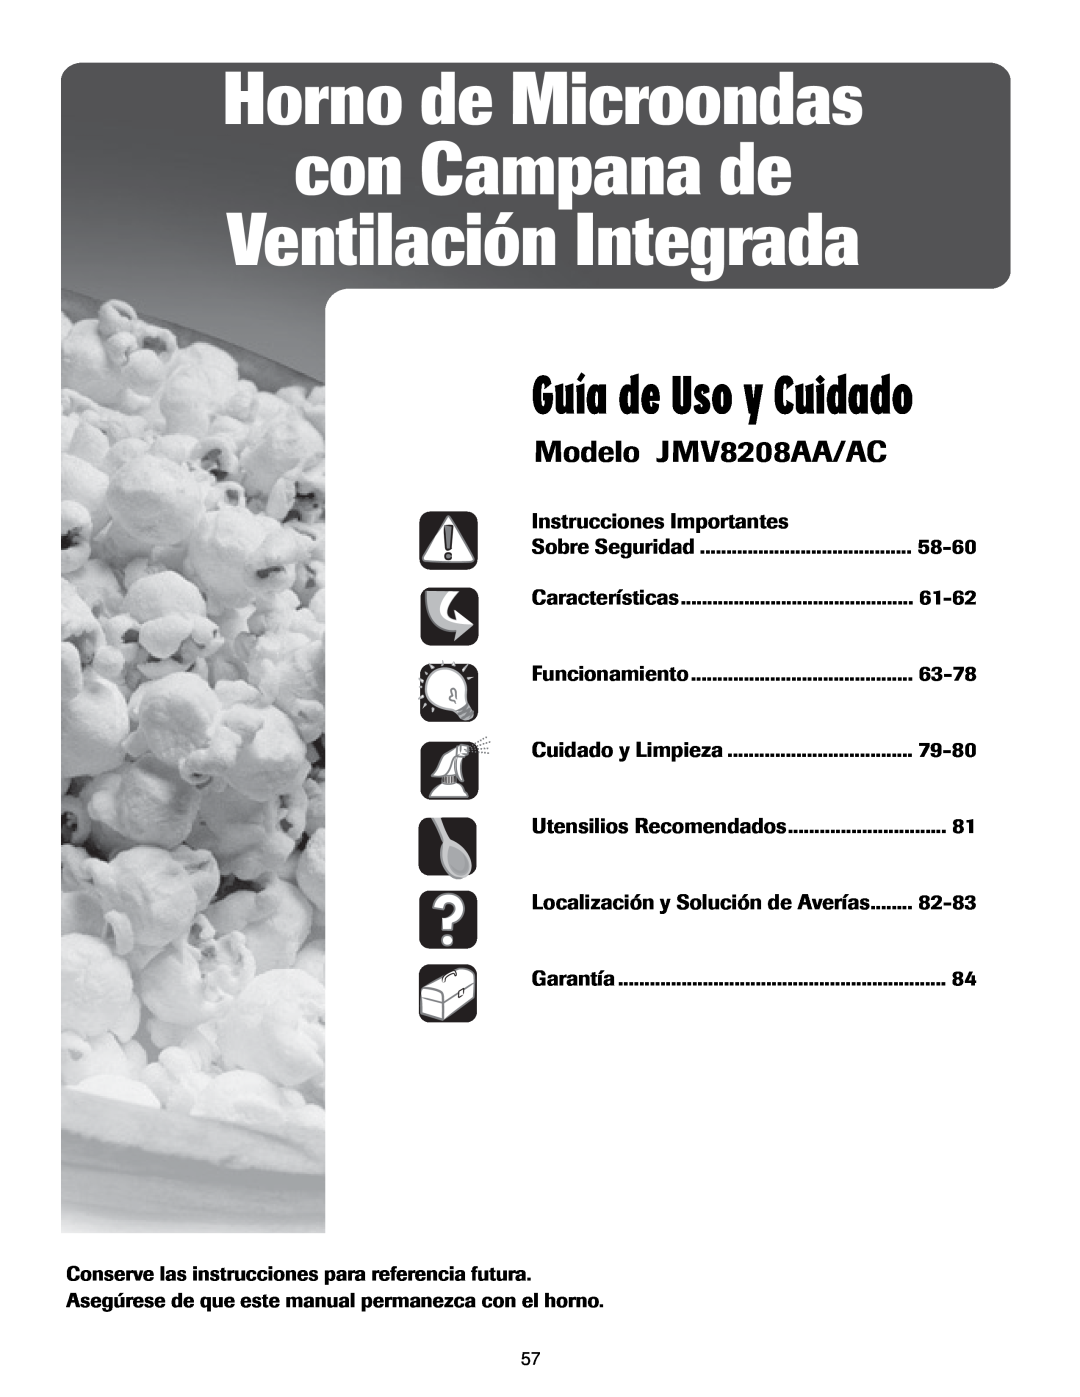 Maytag Guía de Uso y Cuidado, Modelo JMV8208AA/AC, Horno de Microondas con Campana de, Ventilación Integrada 